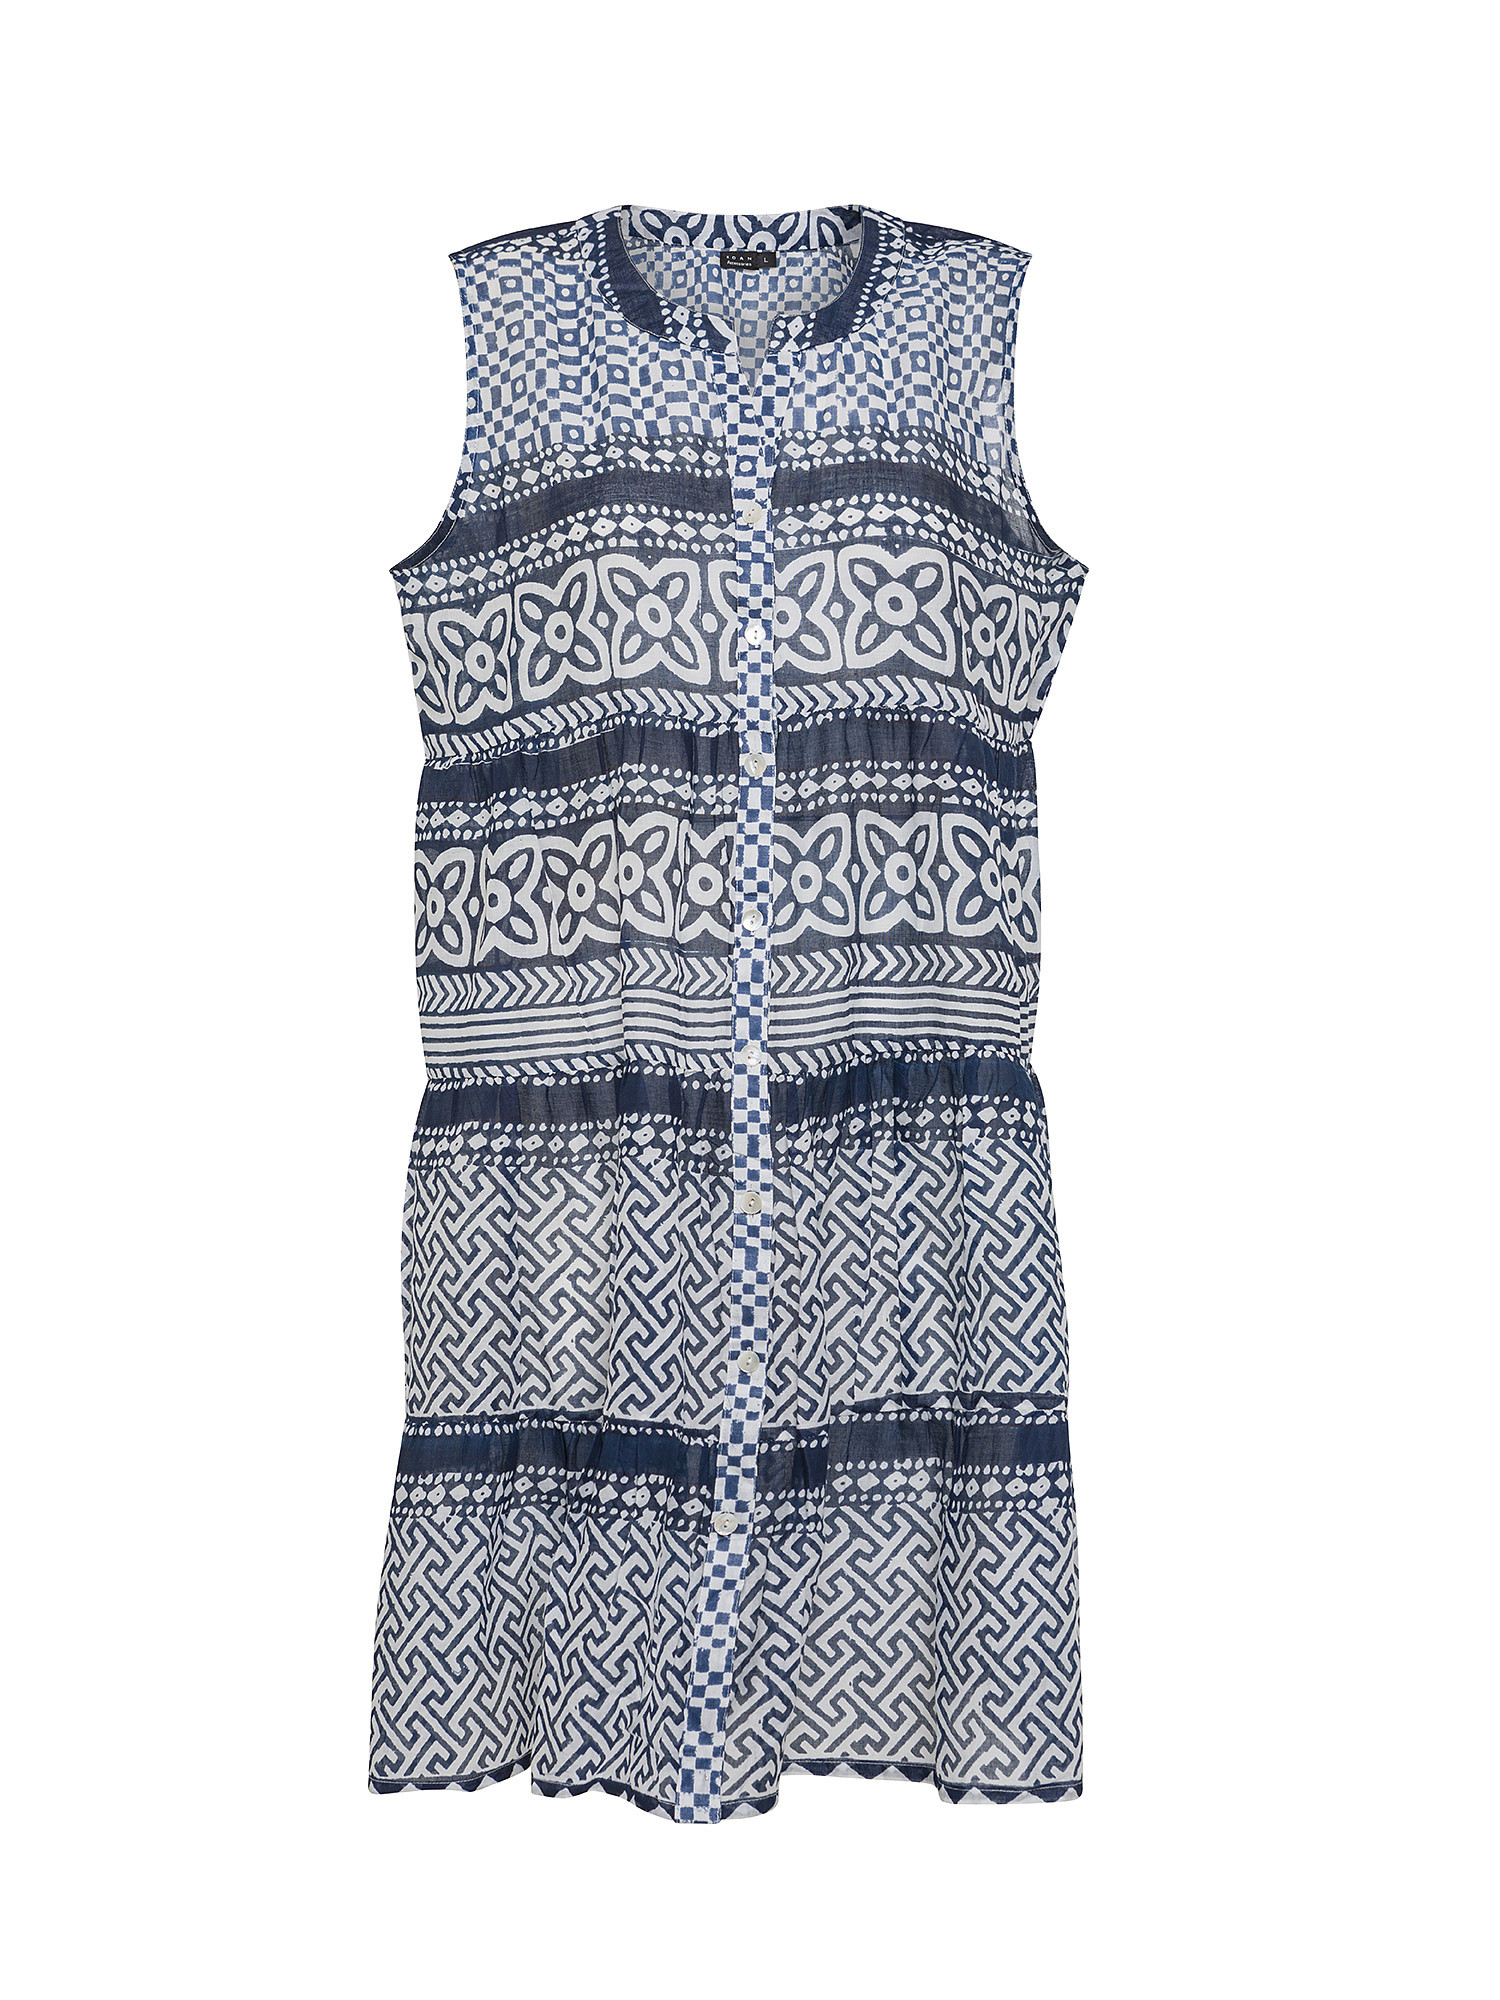 Koan - Patterned cotton dress, Dark Blue, large image number 0